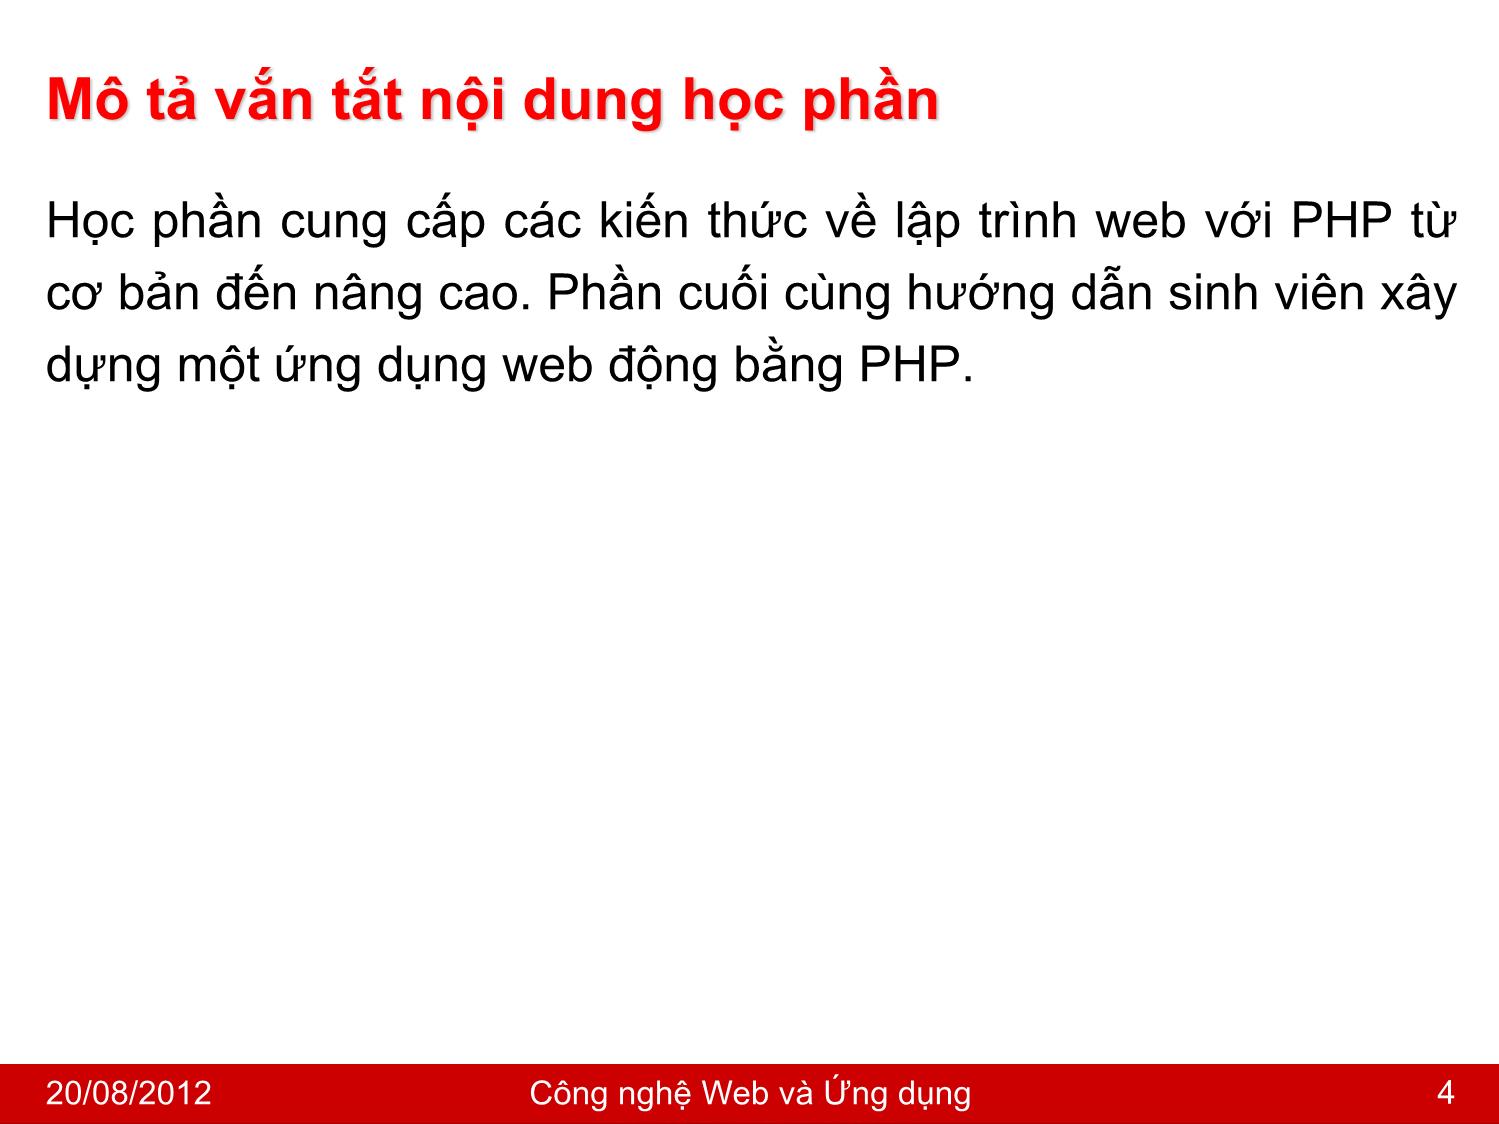 Bài giảng Công nghệ Web và ứng dụng - Giới thiệu môn học - Nguyễn Hoàng Tùng trang 4